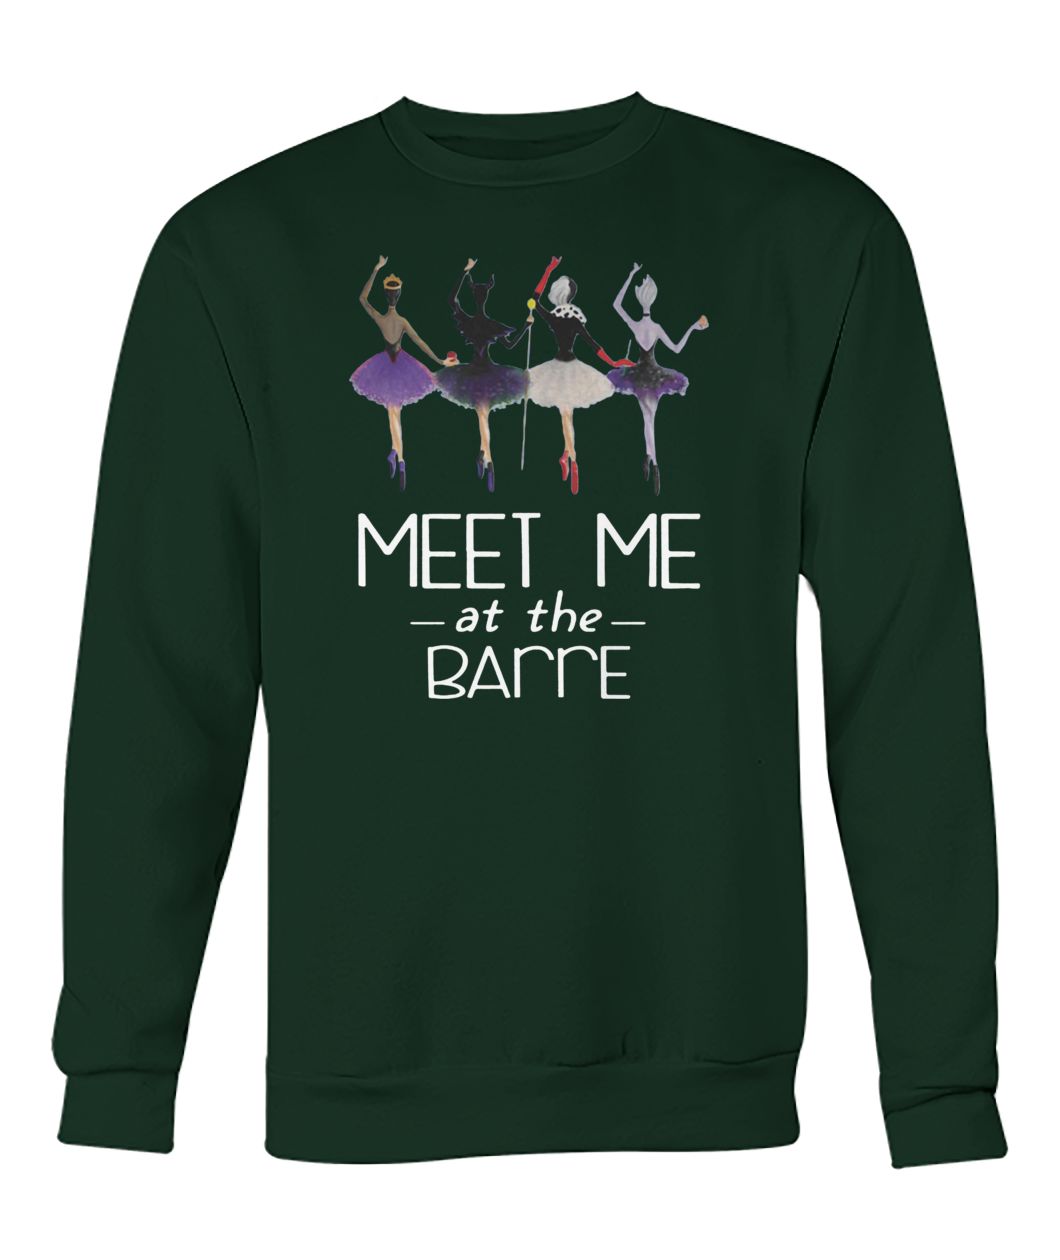 Meet me at the barre crew neck sweatshirt